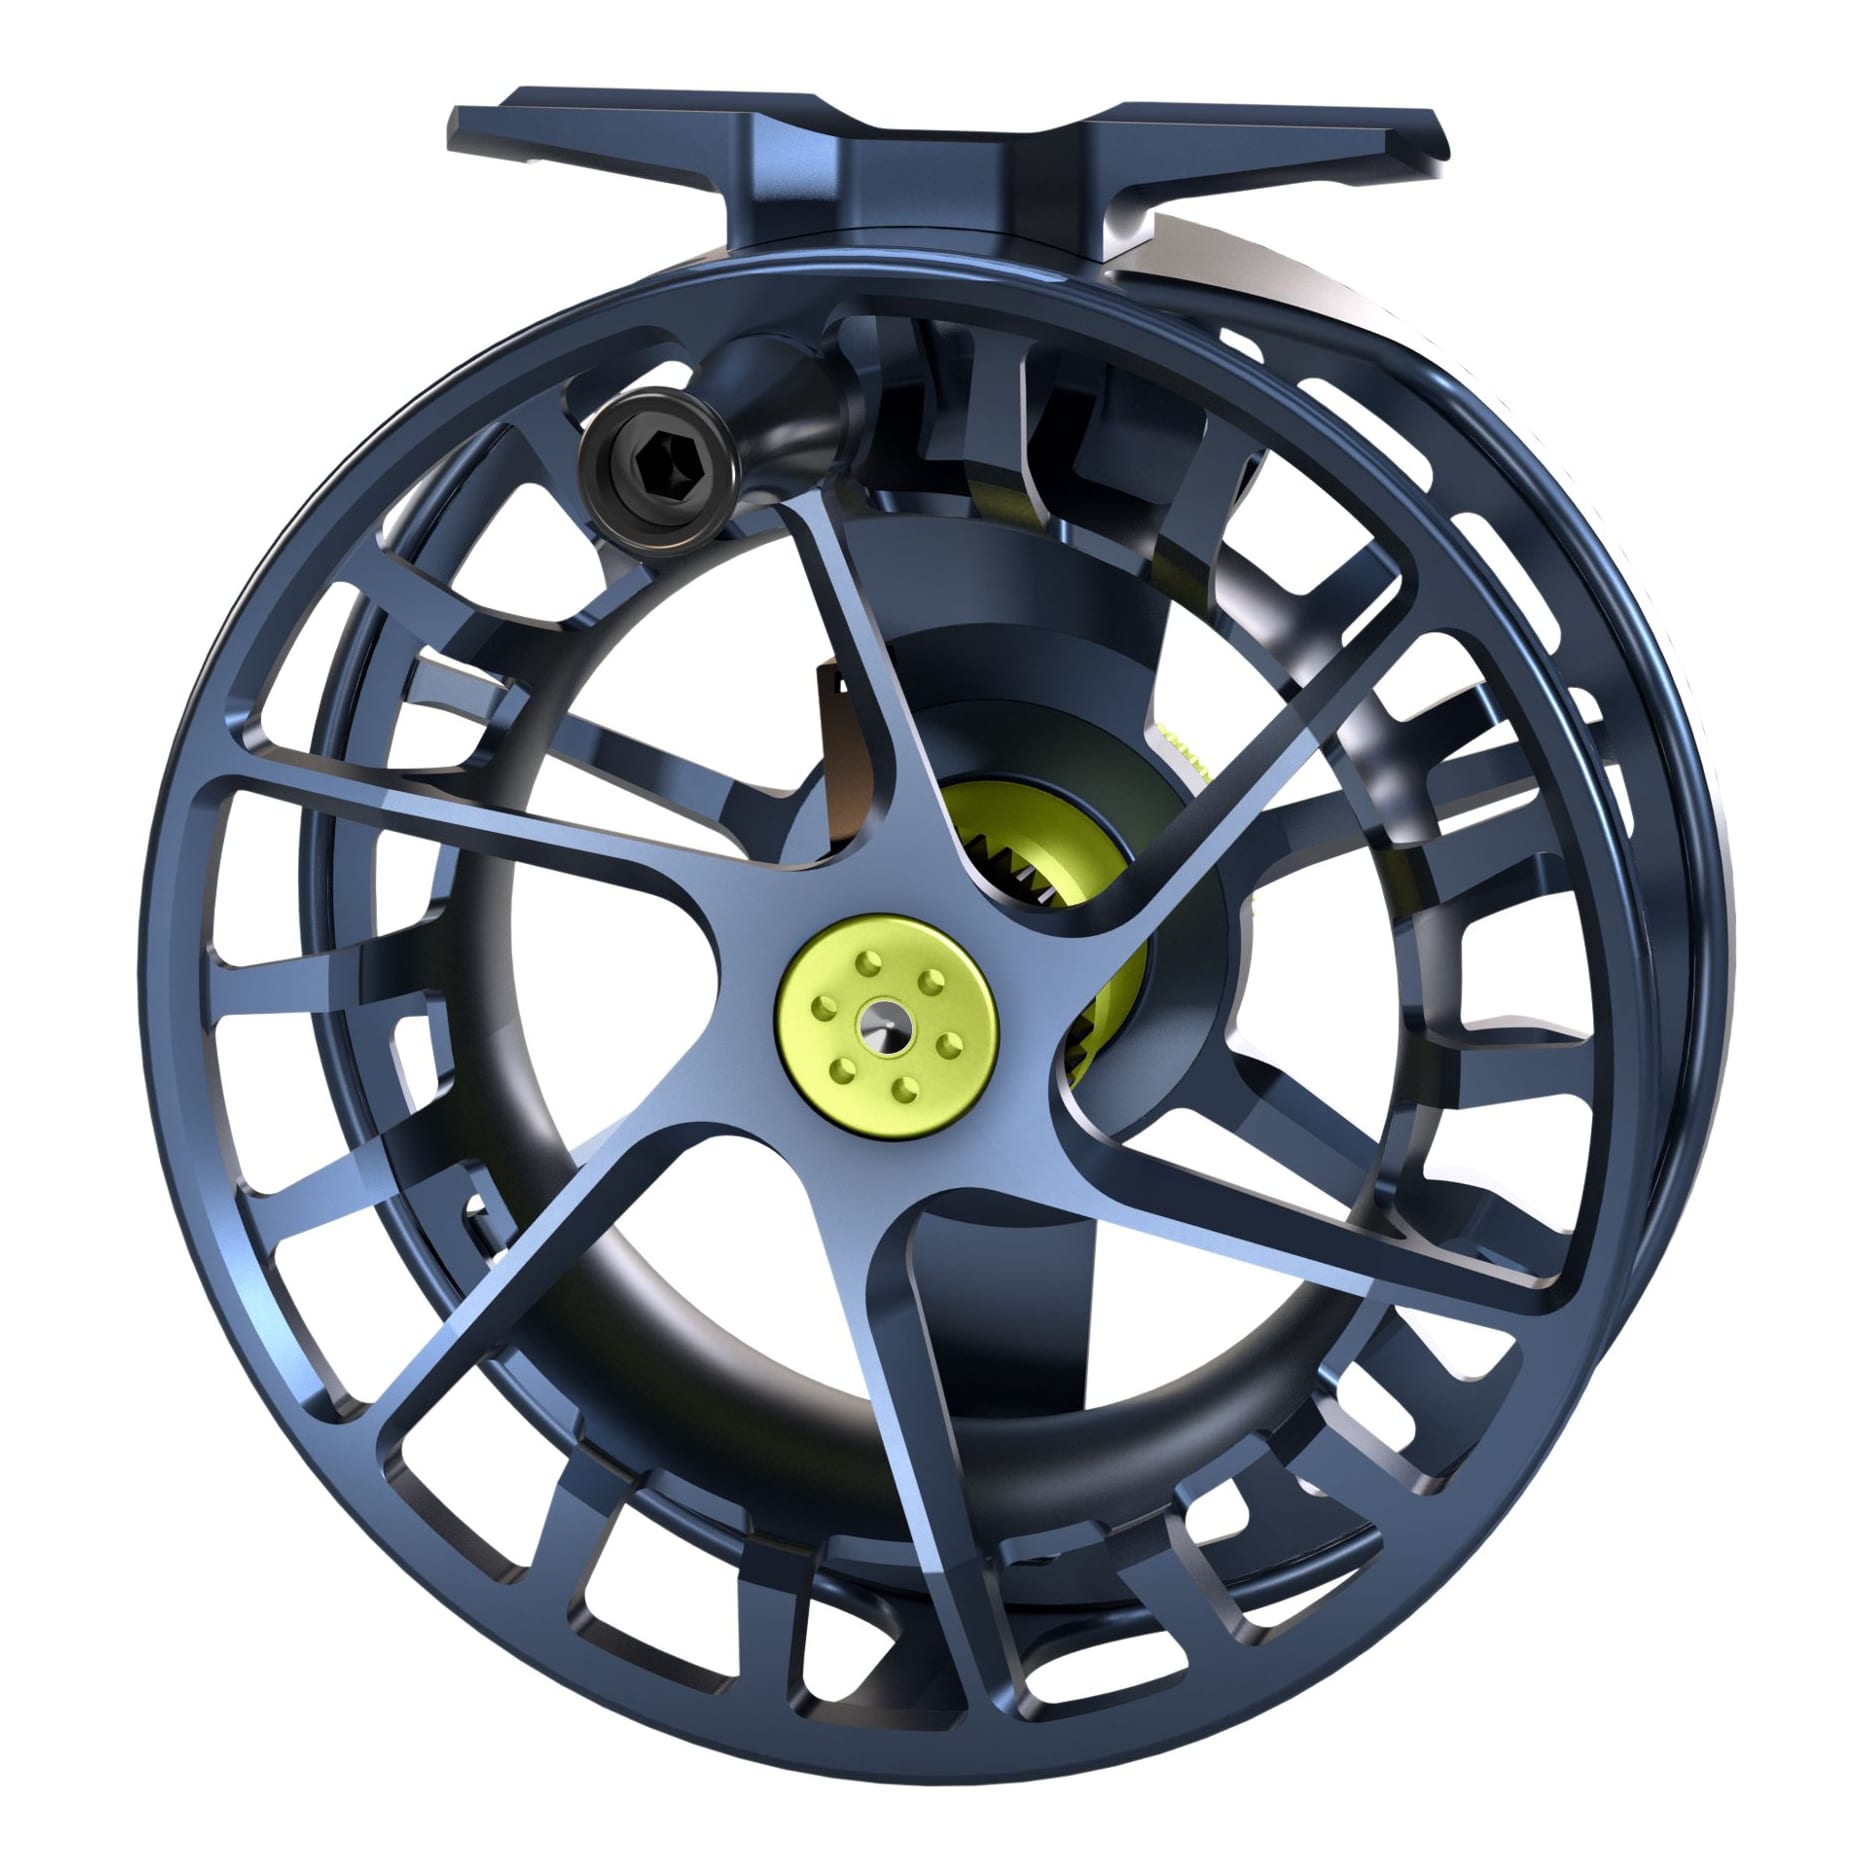 Waterworks-Lamson Speedster® S Fly Reel - Opposite View